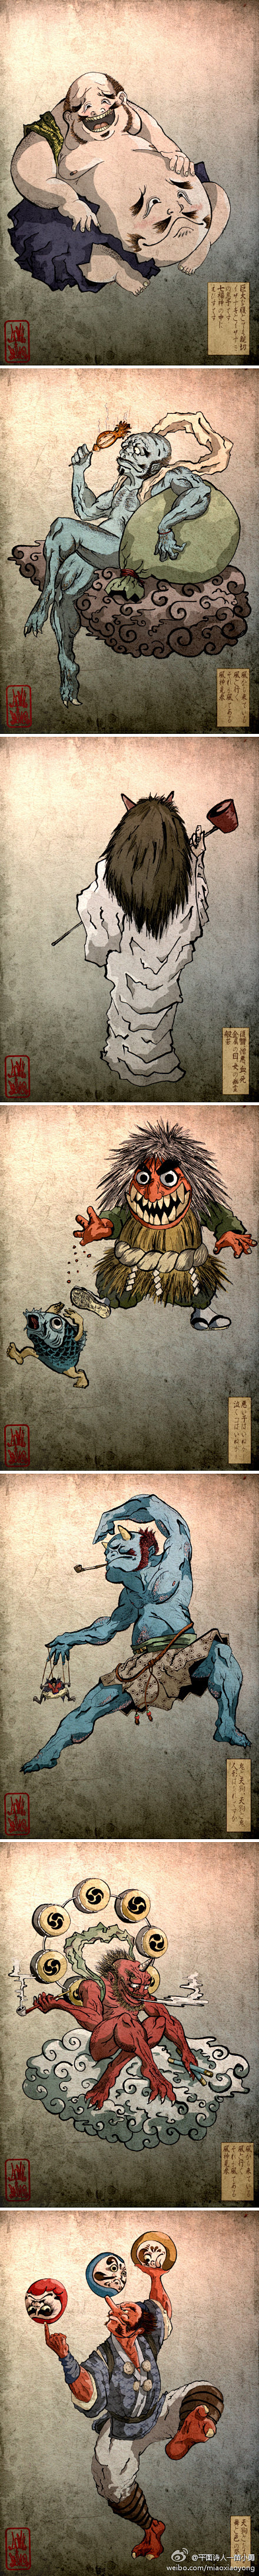 设计目录：日本鬼文化的確傳承不錯。